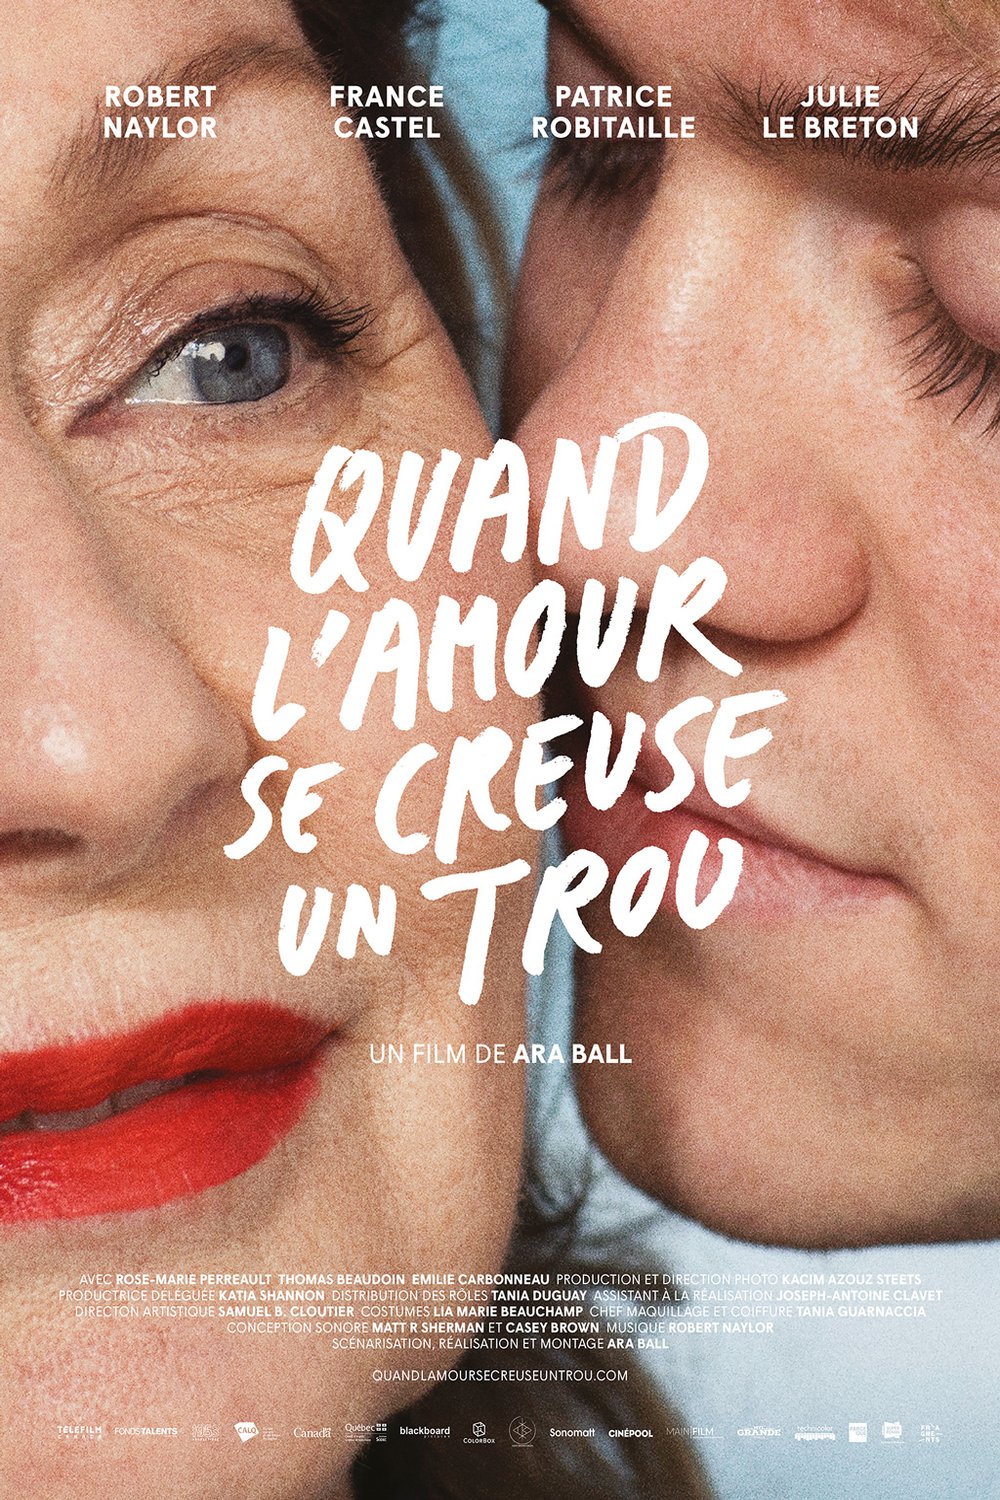 Poster of the movie Quand l'amour se creuse un trou